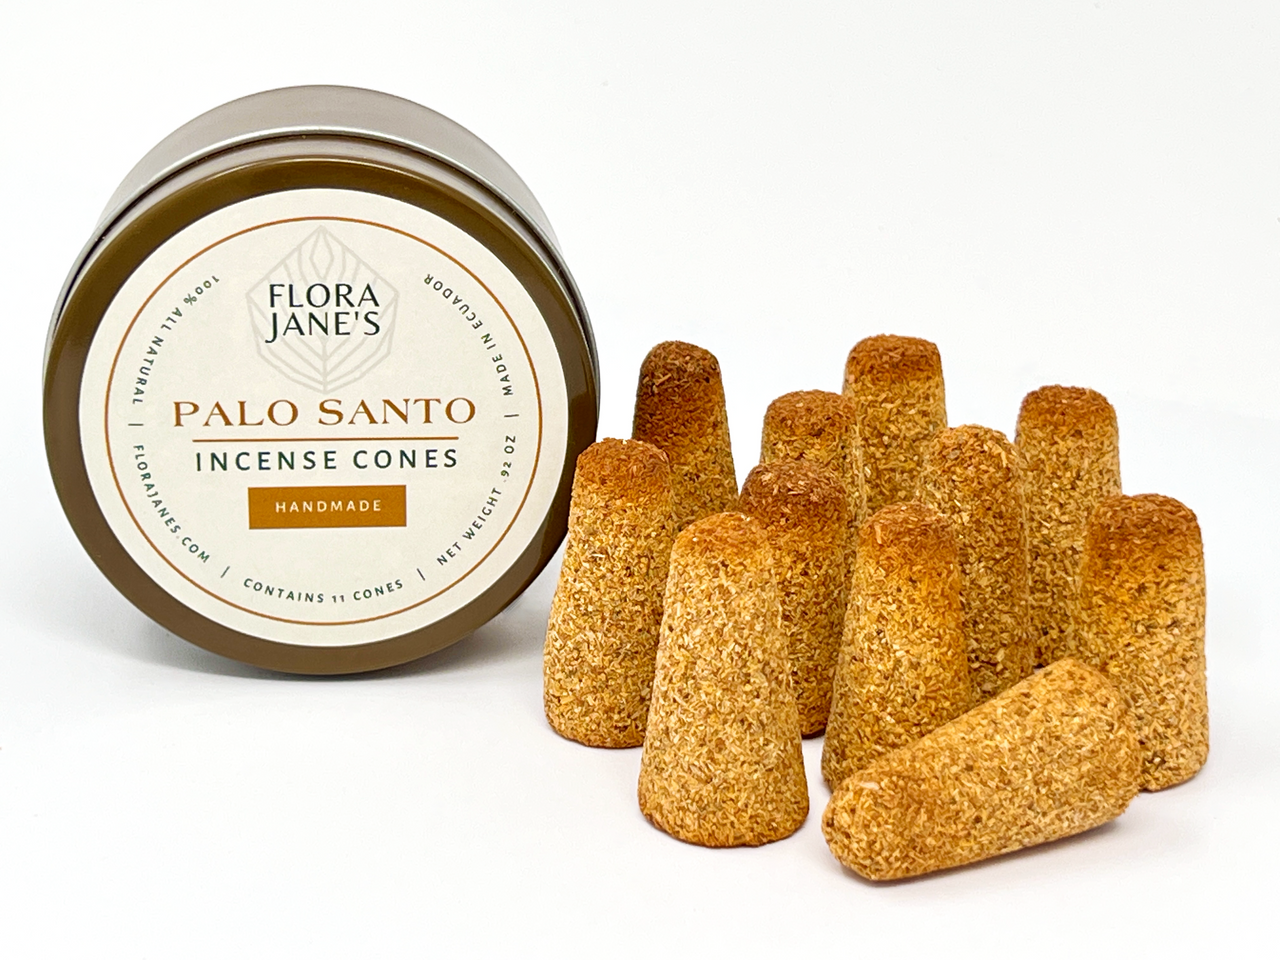 Palo Santo Incense Cones – Flora Jane's